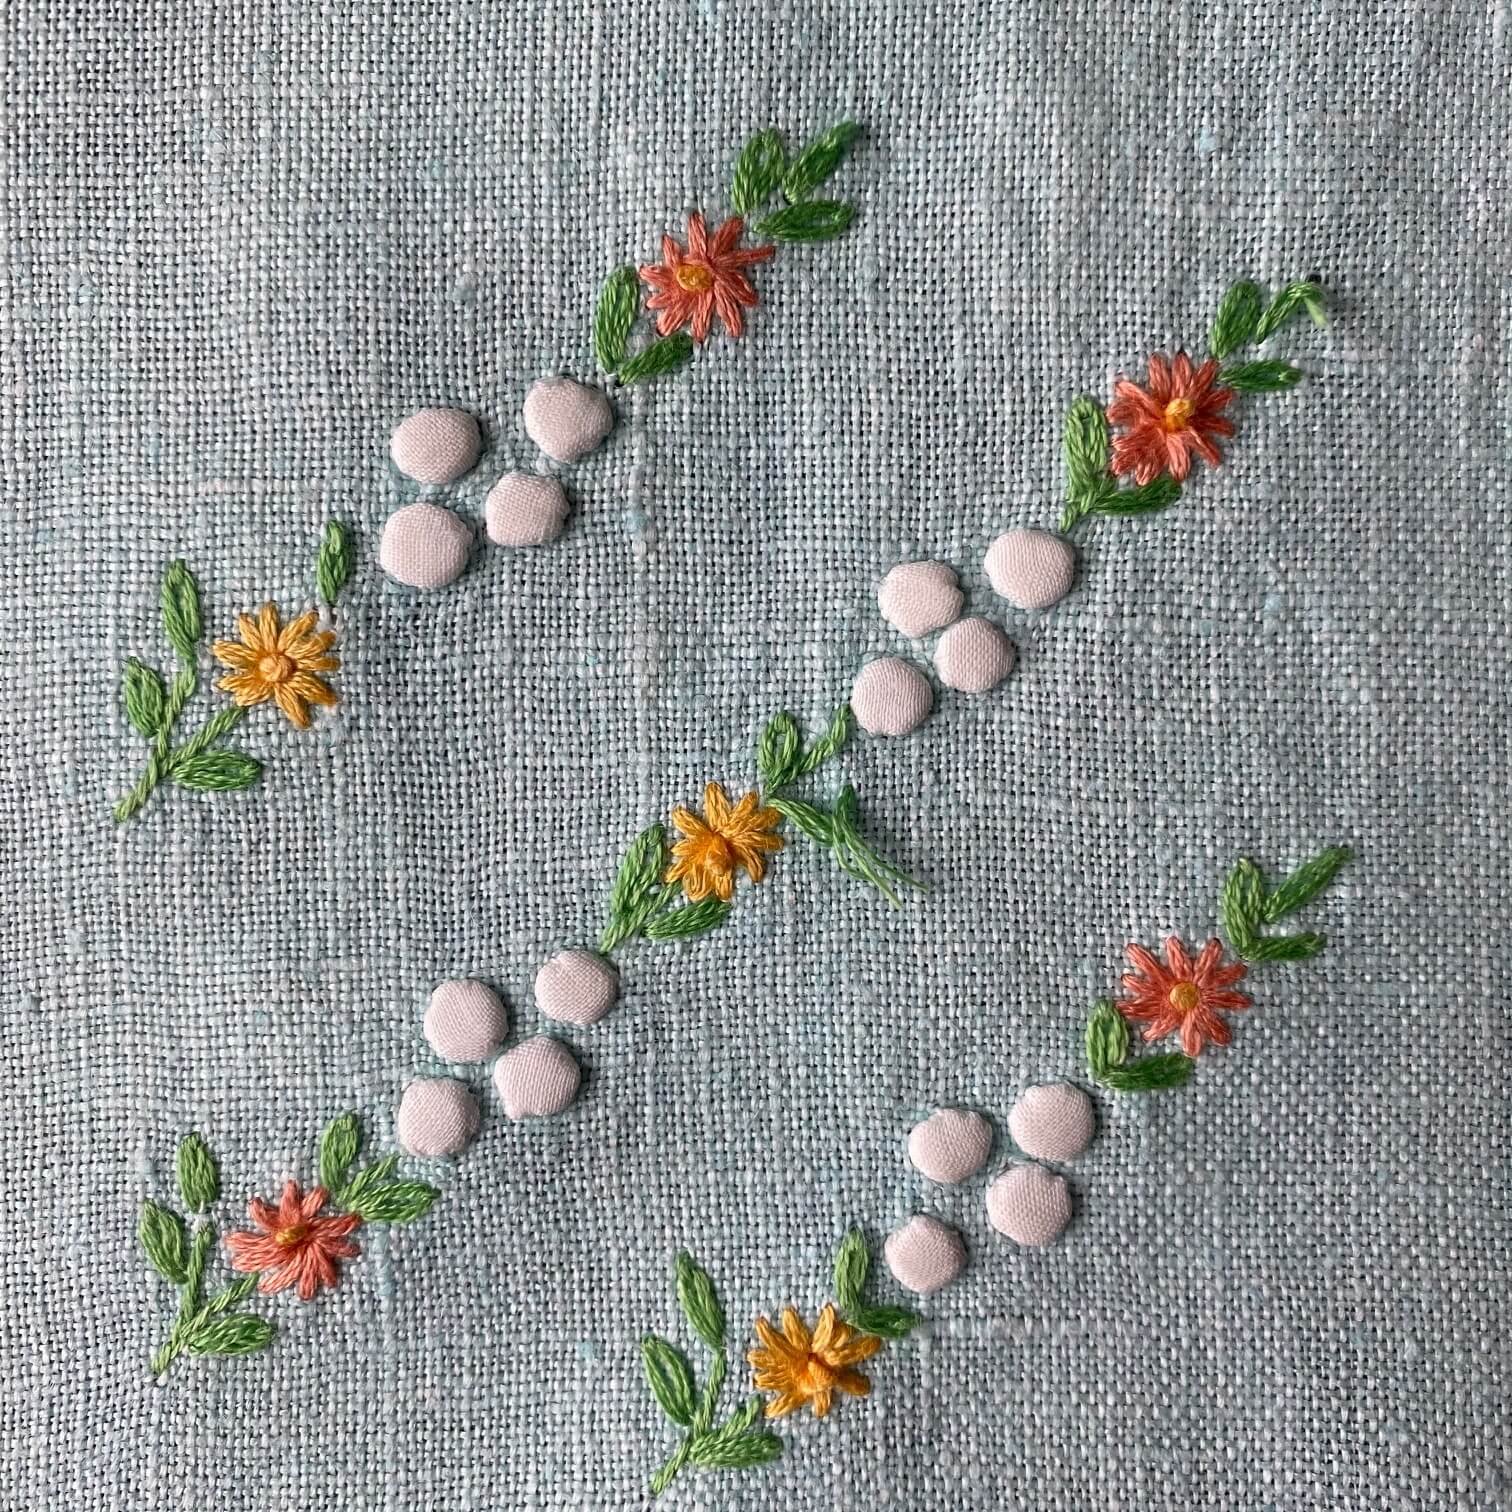 Vintage Aqua Embroidered Tea  Towel - Citrus Colors for a Sunshine Kitchen